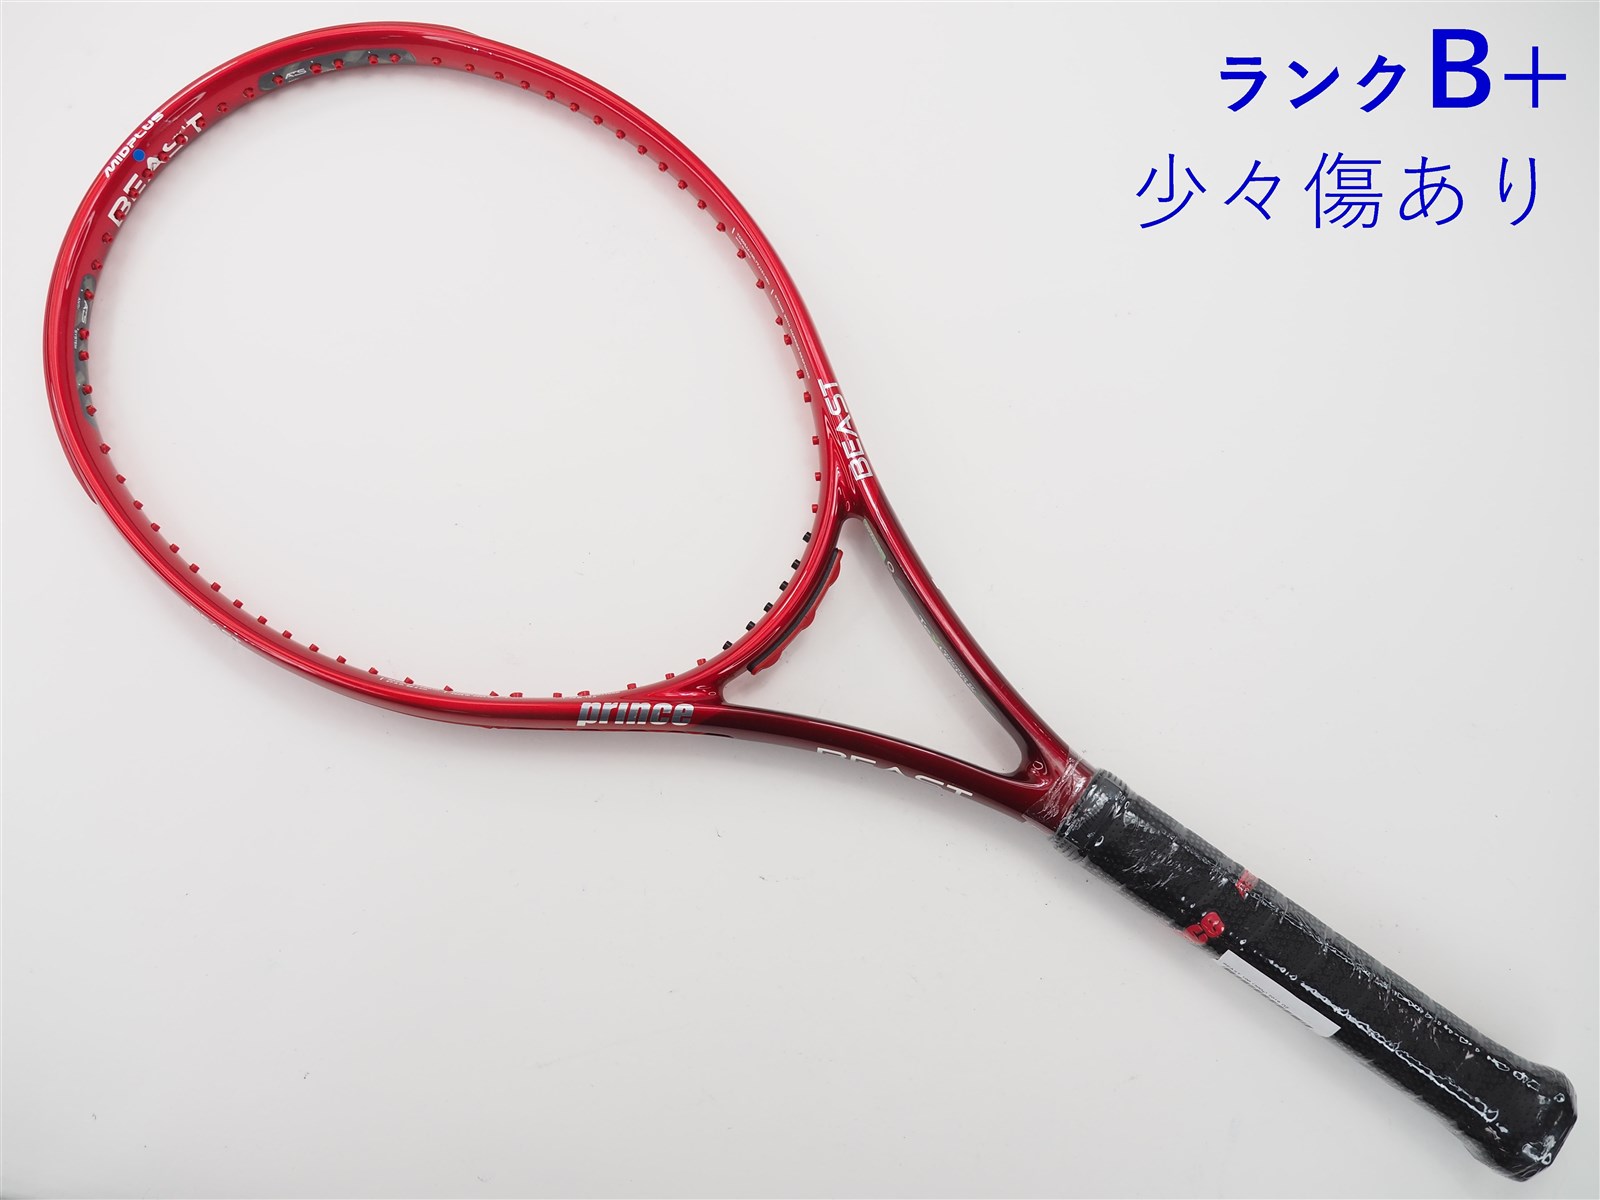 【新品未使用】【硬式テニス】Prince ビースト100 100g